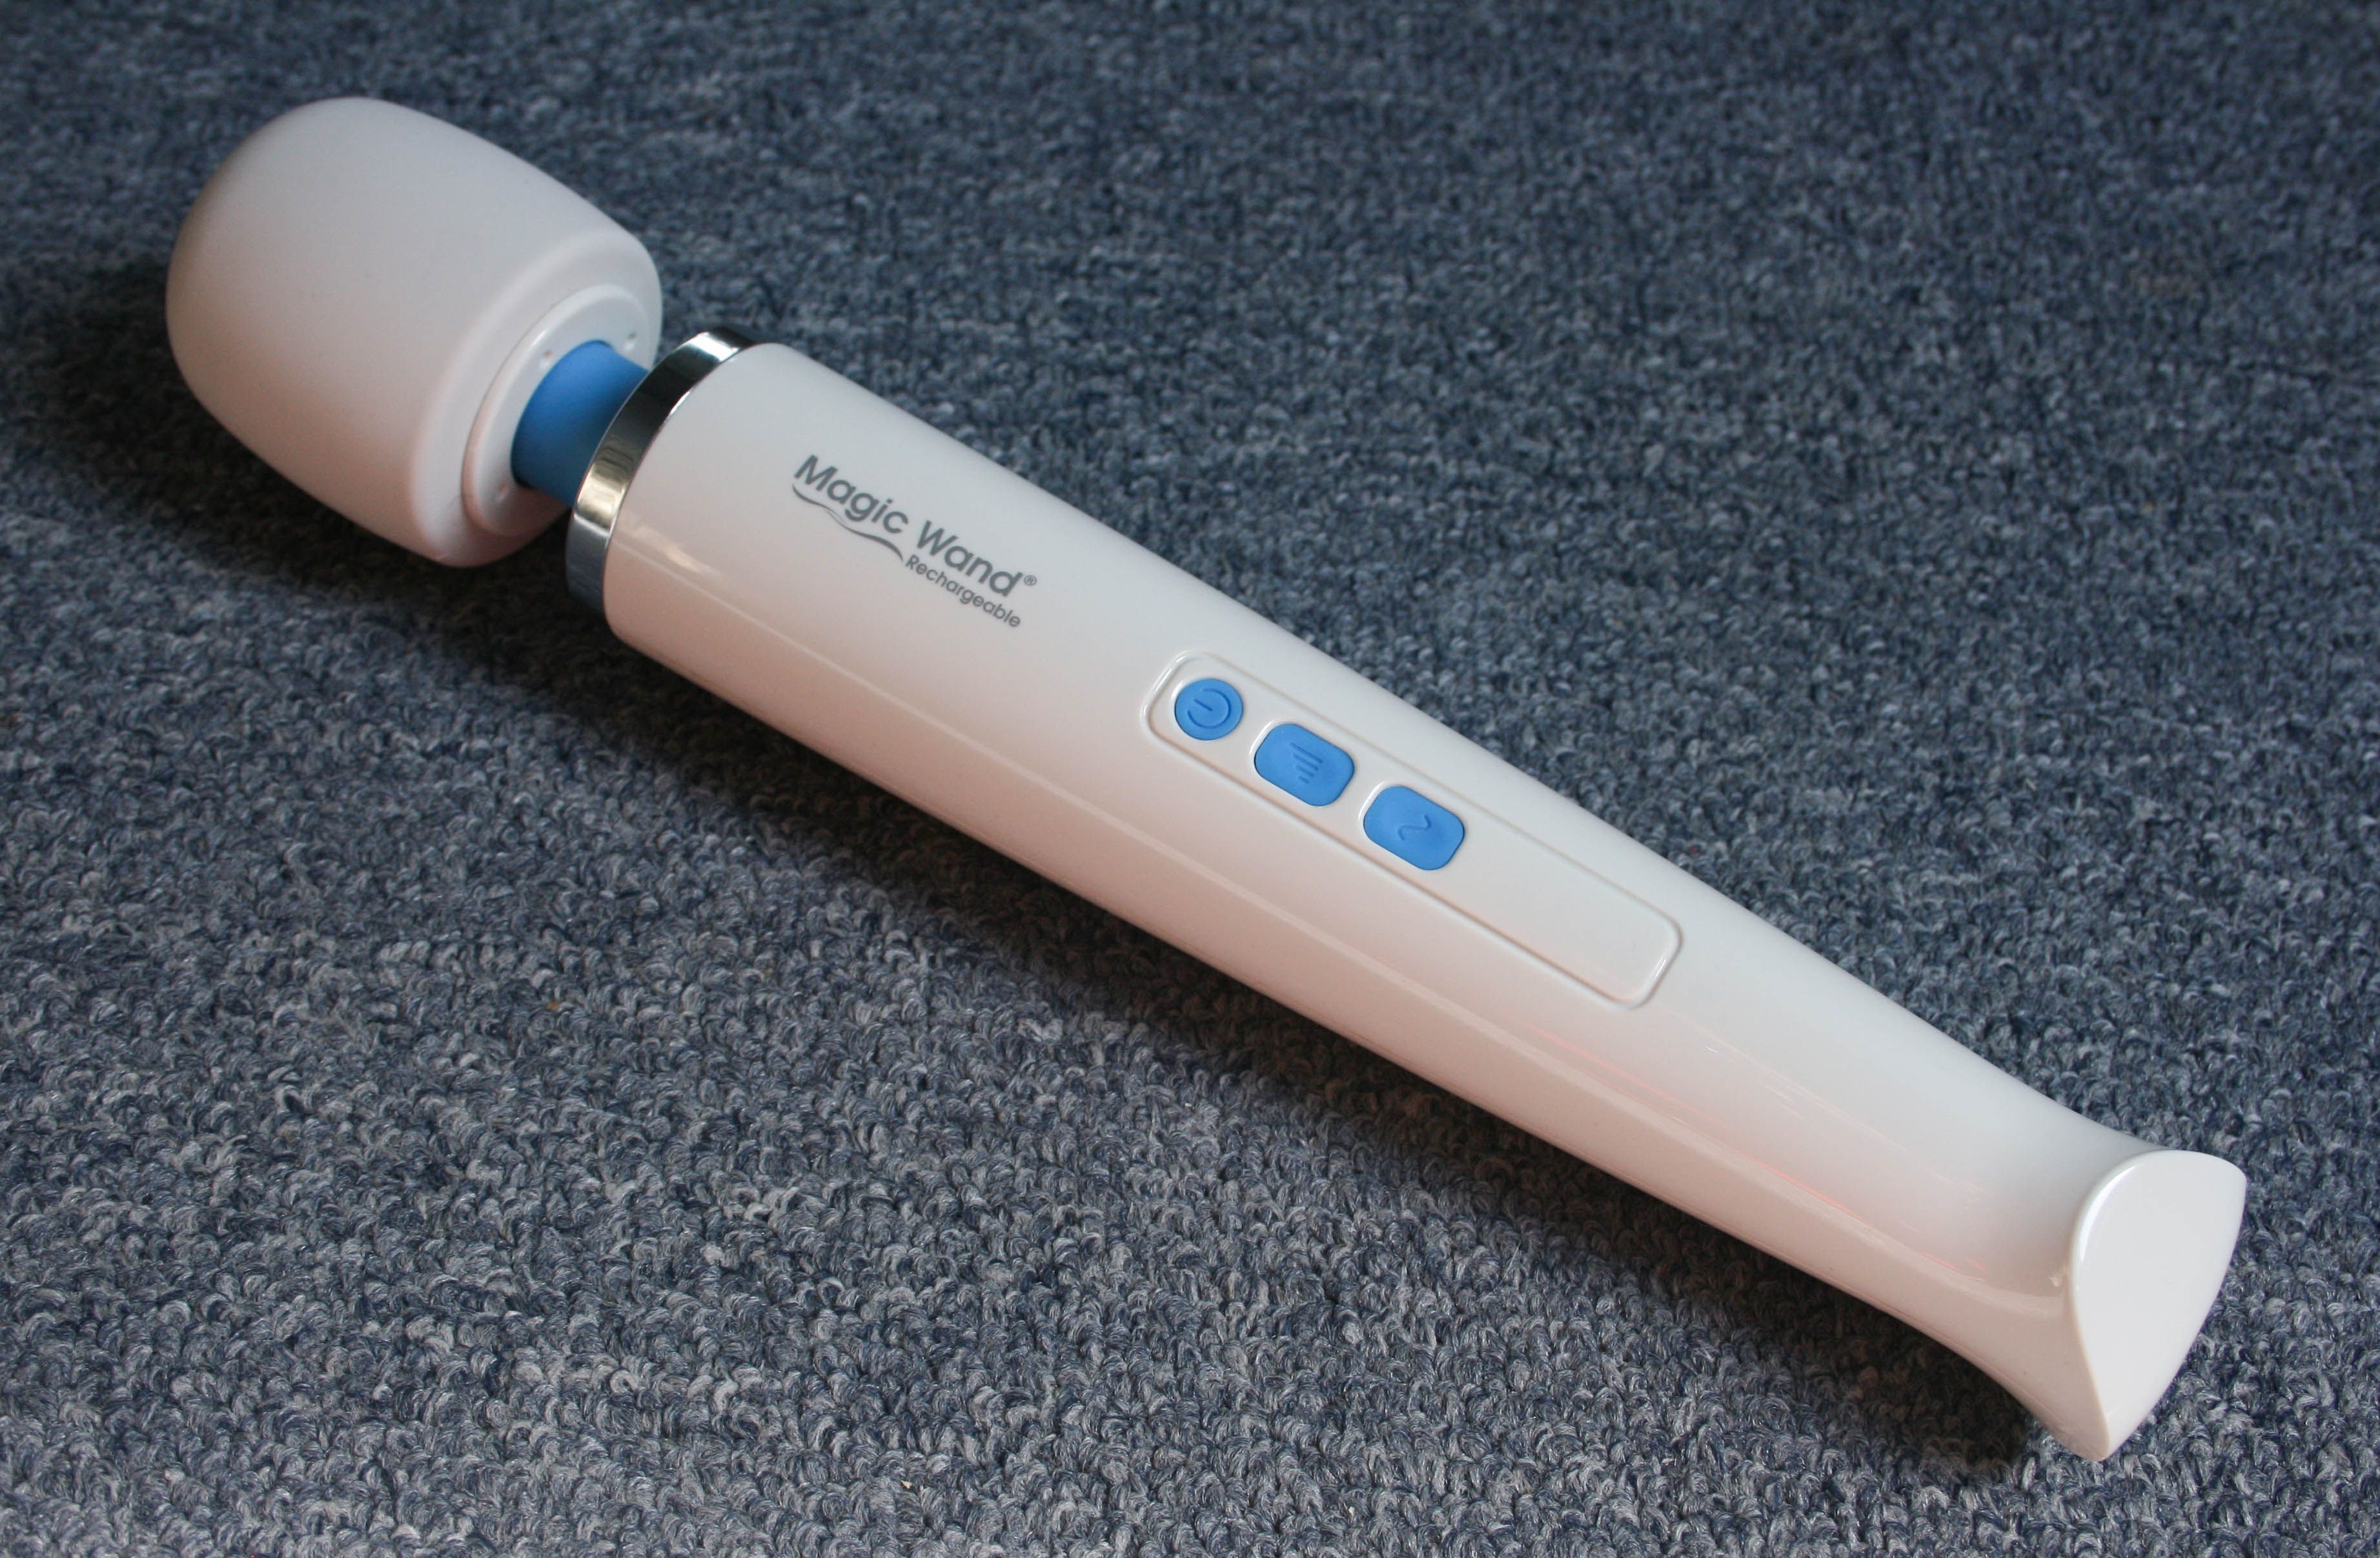 Sunstone recommendet hitachi vibrator than Better